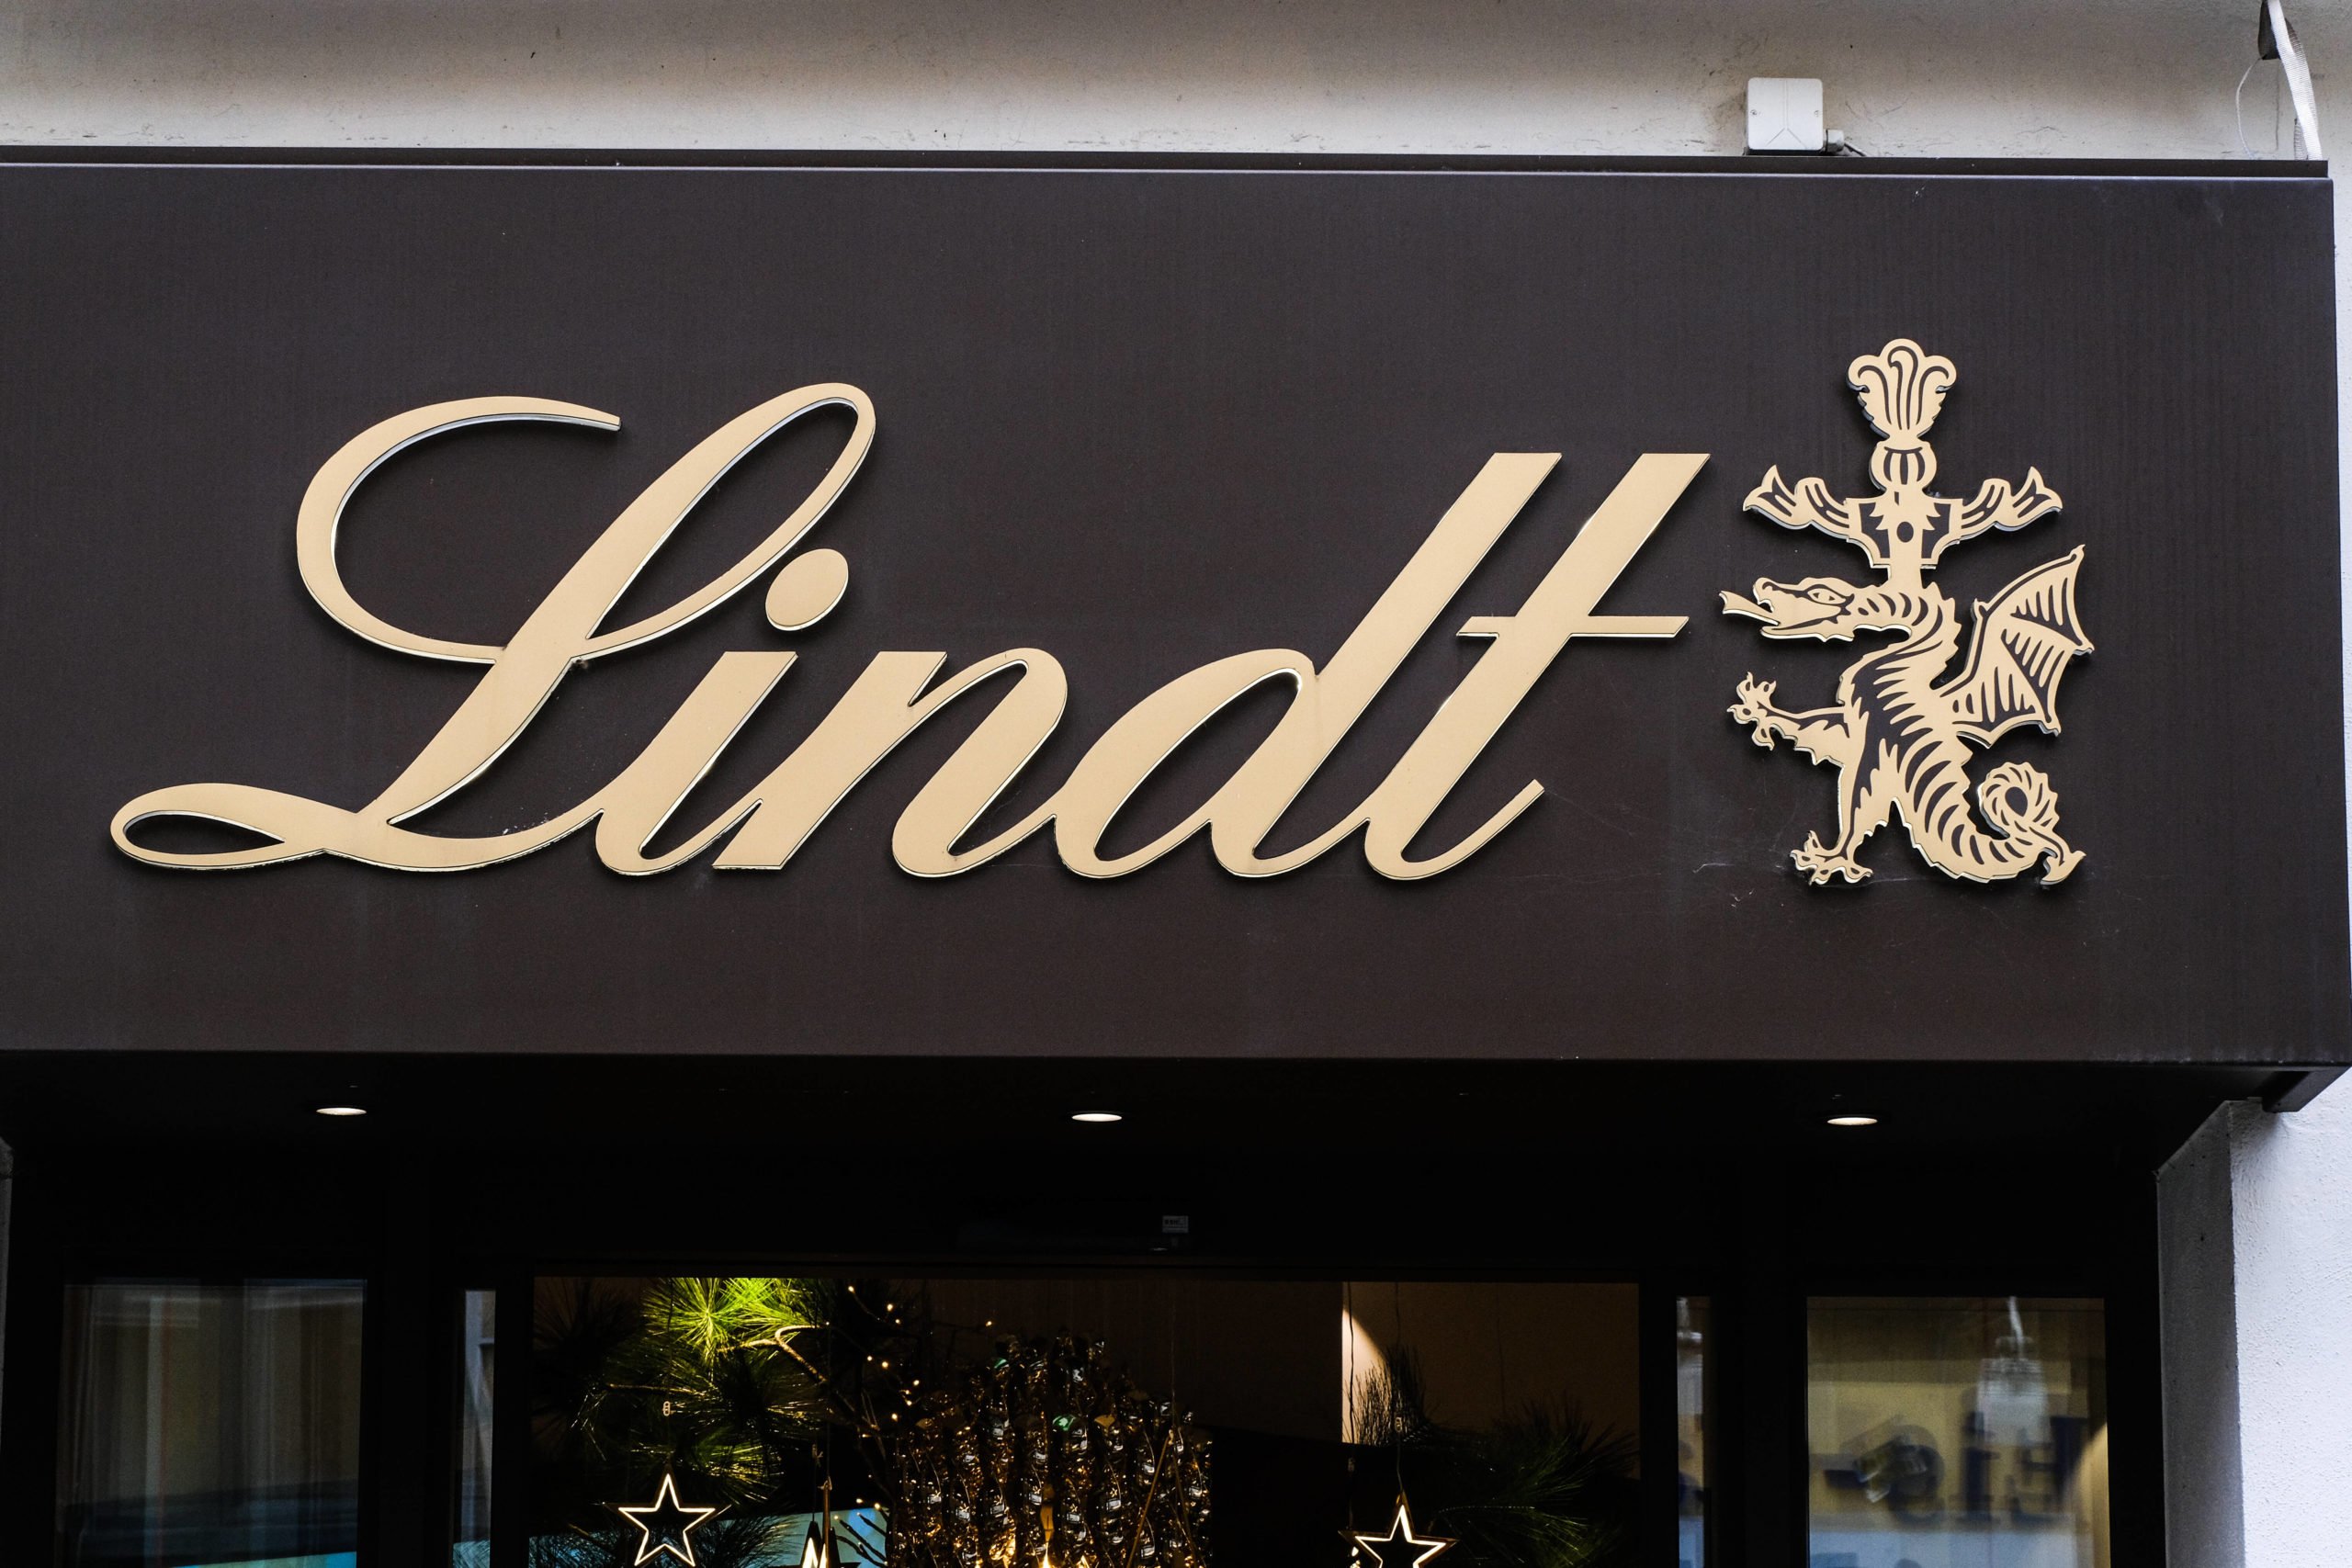 Schweiz in Berlin Die leckere Schokolade von Lindt geht immer – ob zwischendurch oder zu einem besonderen Anlass. In Berlin betreibt der Schweizer Schokoladenhersteller mehrere Boutiquen.